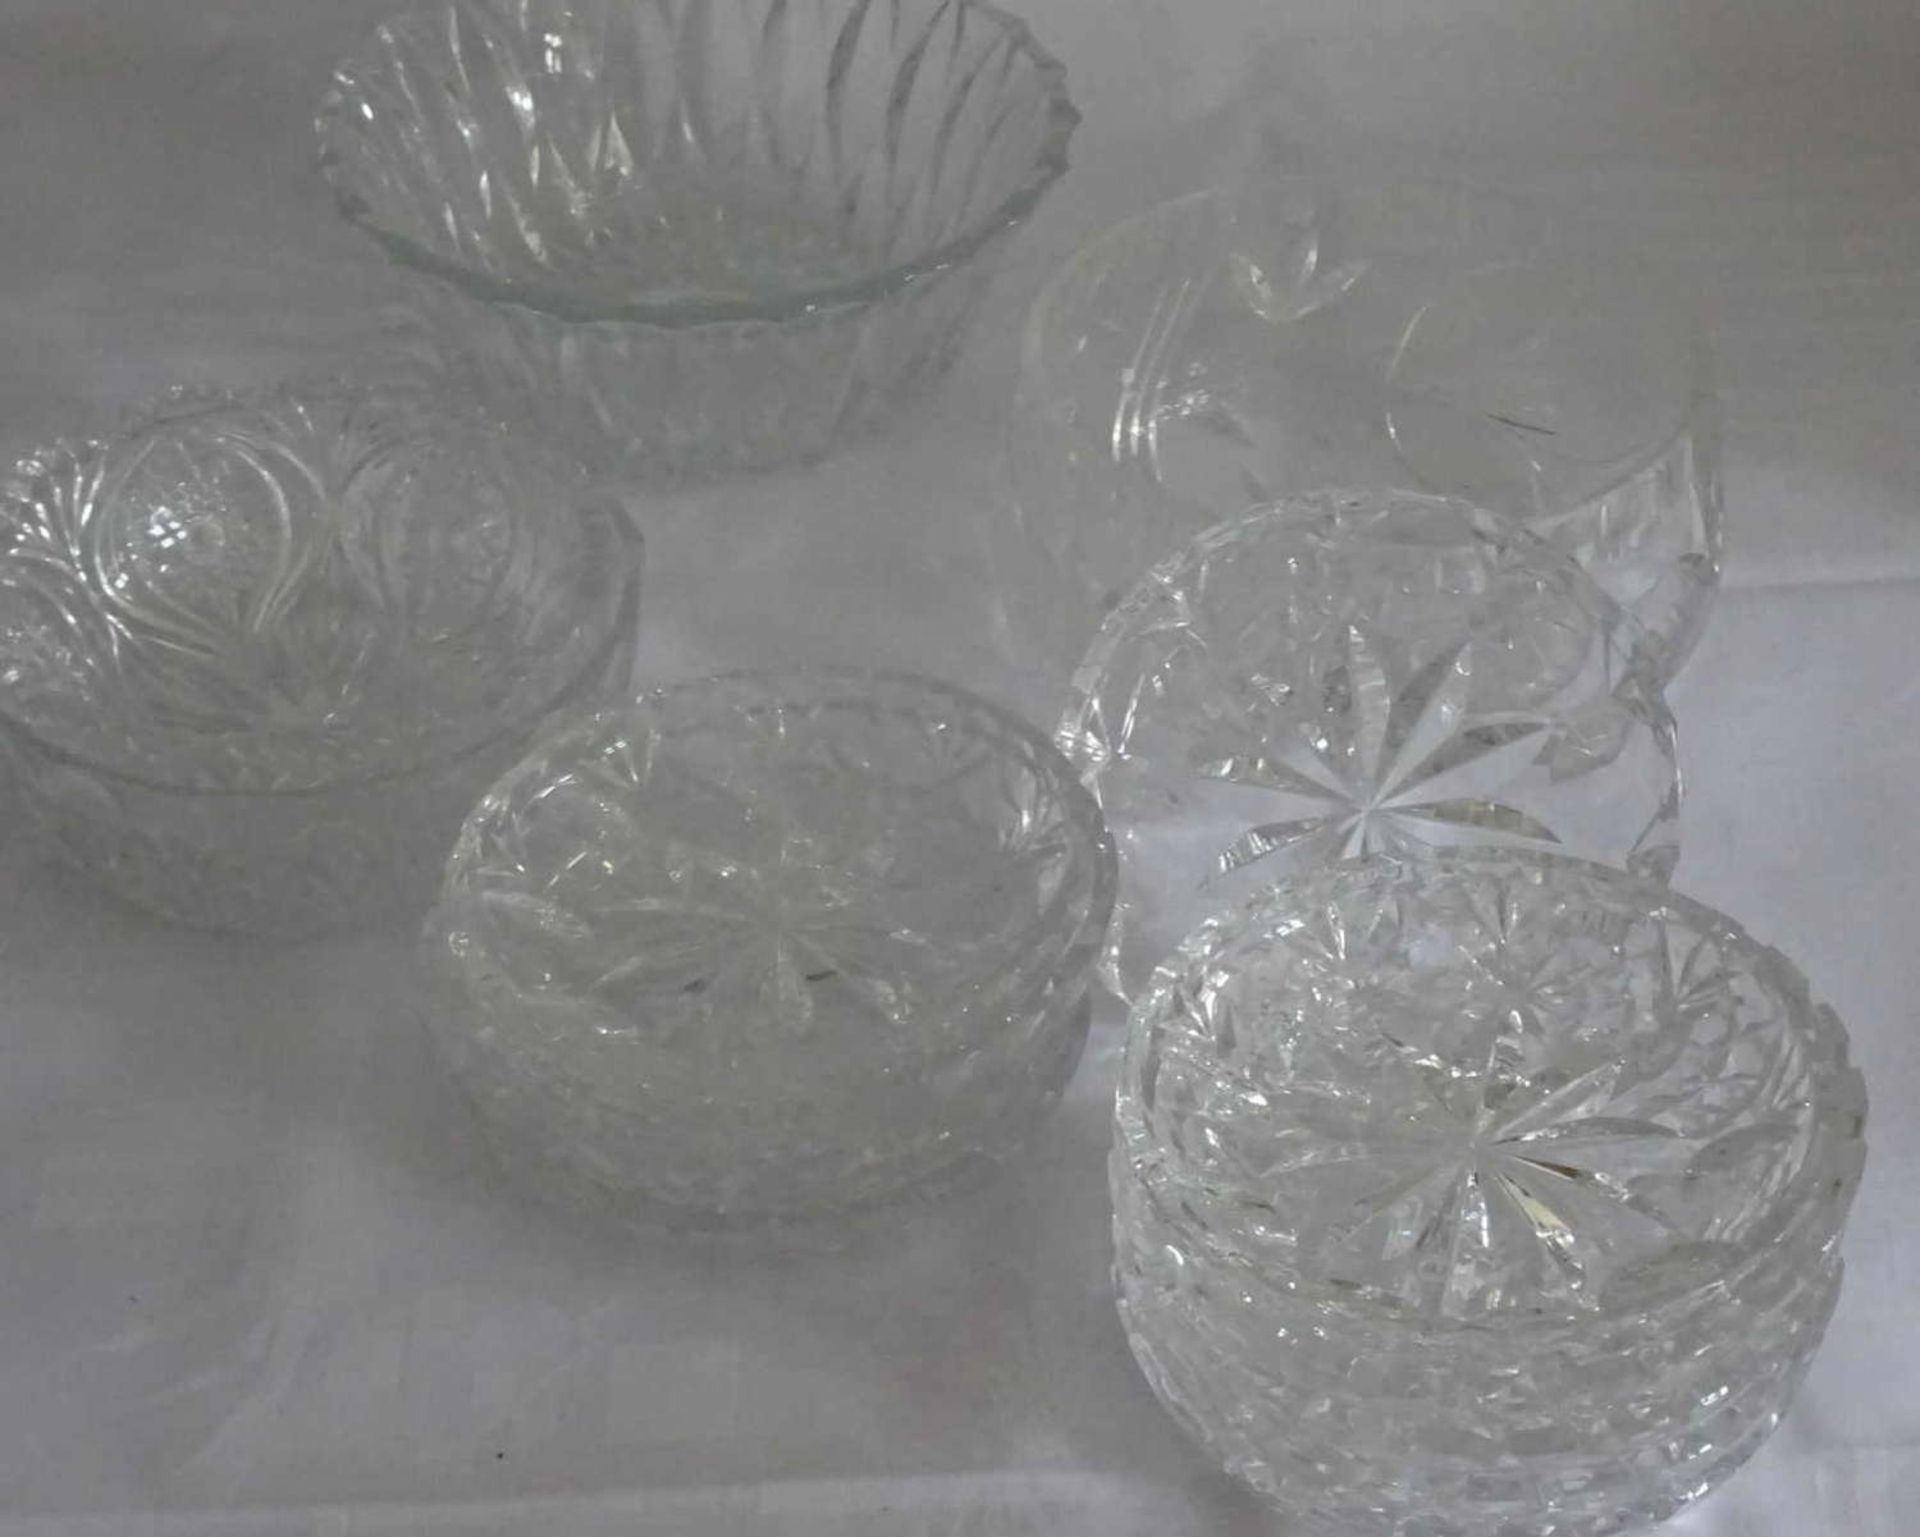 Lot Schalen und Schüsseln aus Glas. Bitte besichtigen!Lot bowls and bowls of glass. Please visit!